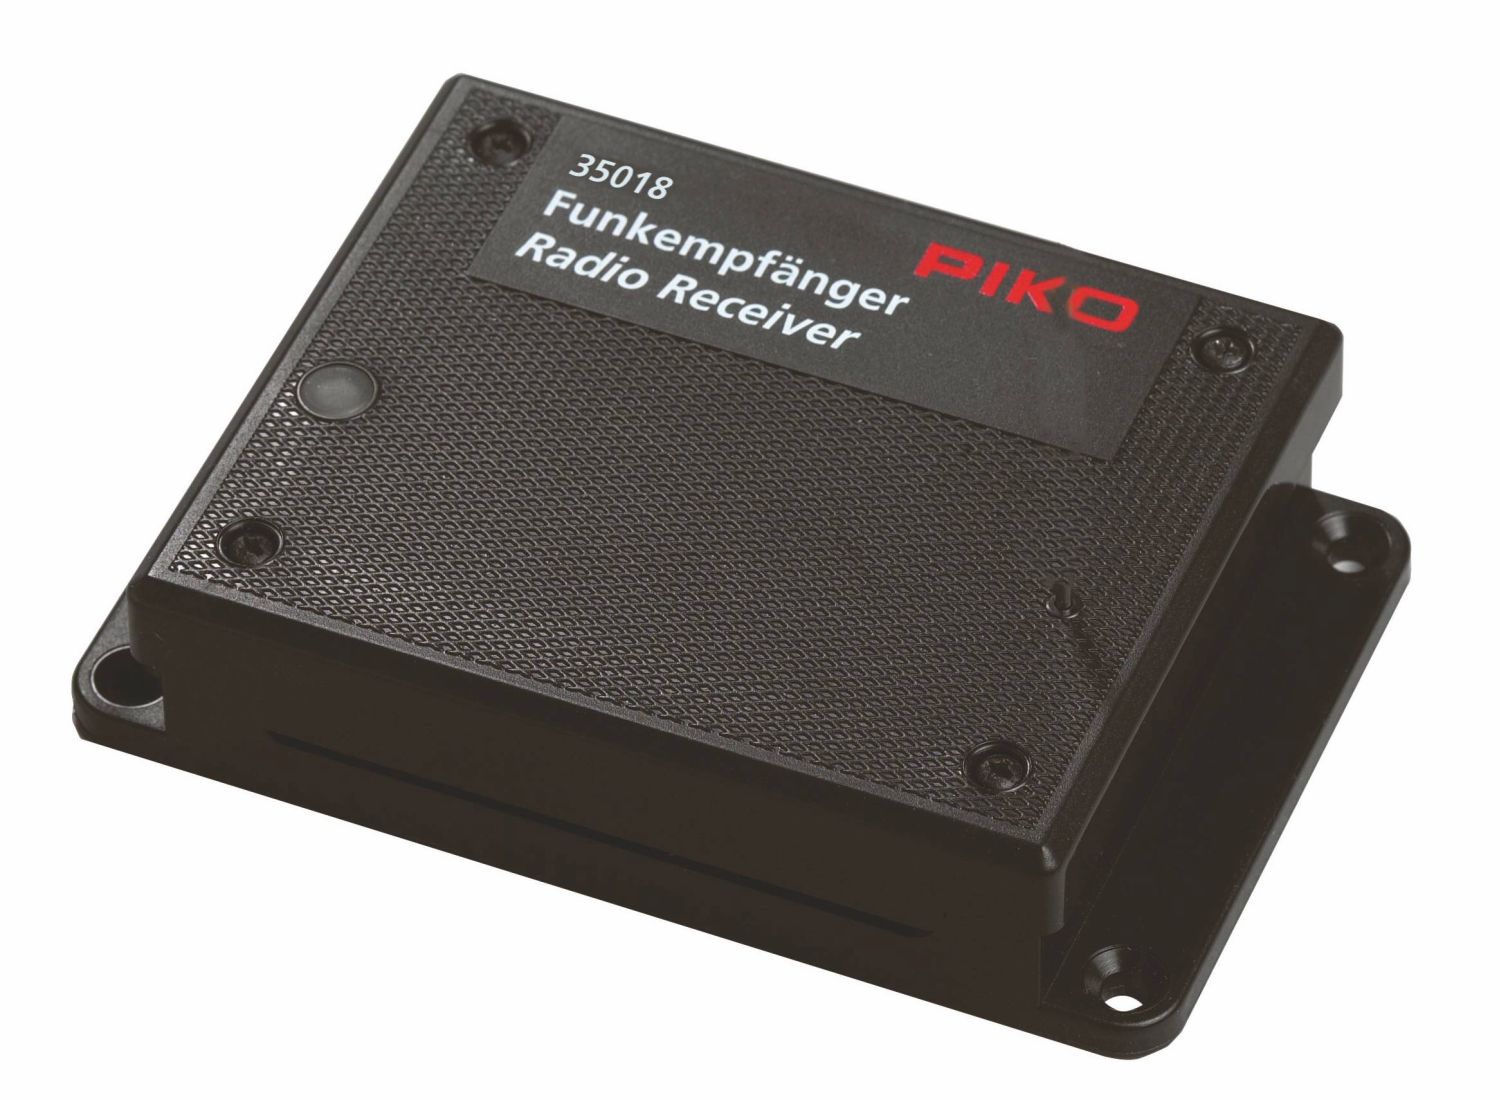 Piko 35018 - Funkempfänger, 2,4 GHz